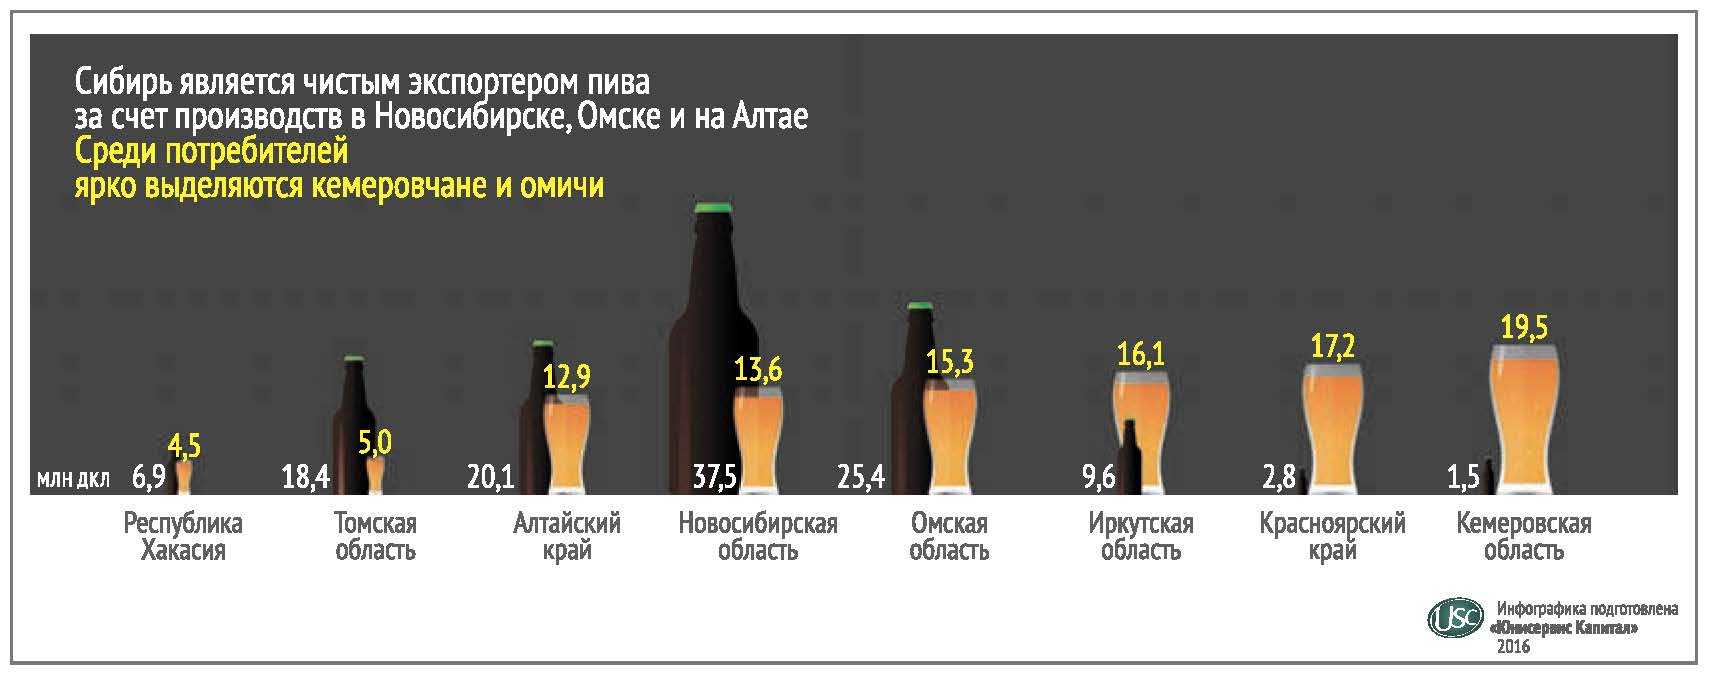 Топ 9 лучших марок пива в россии